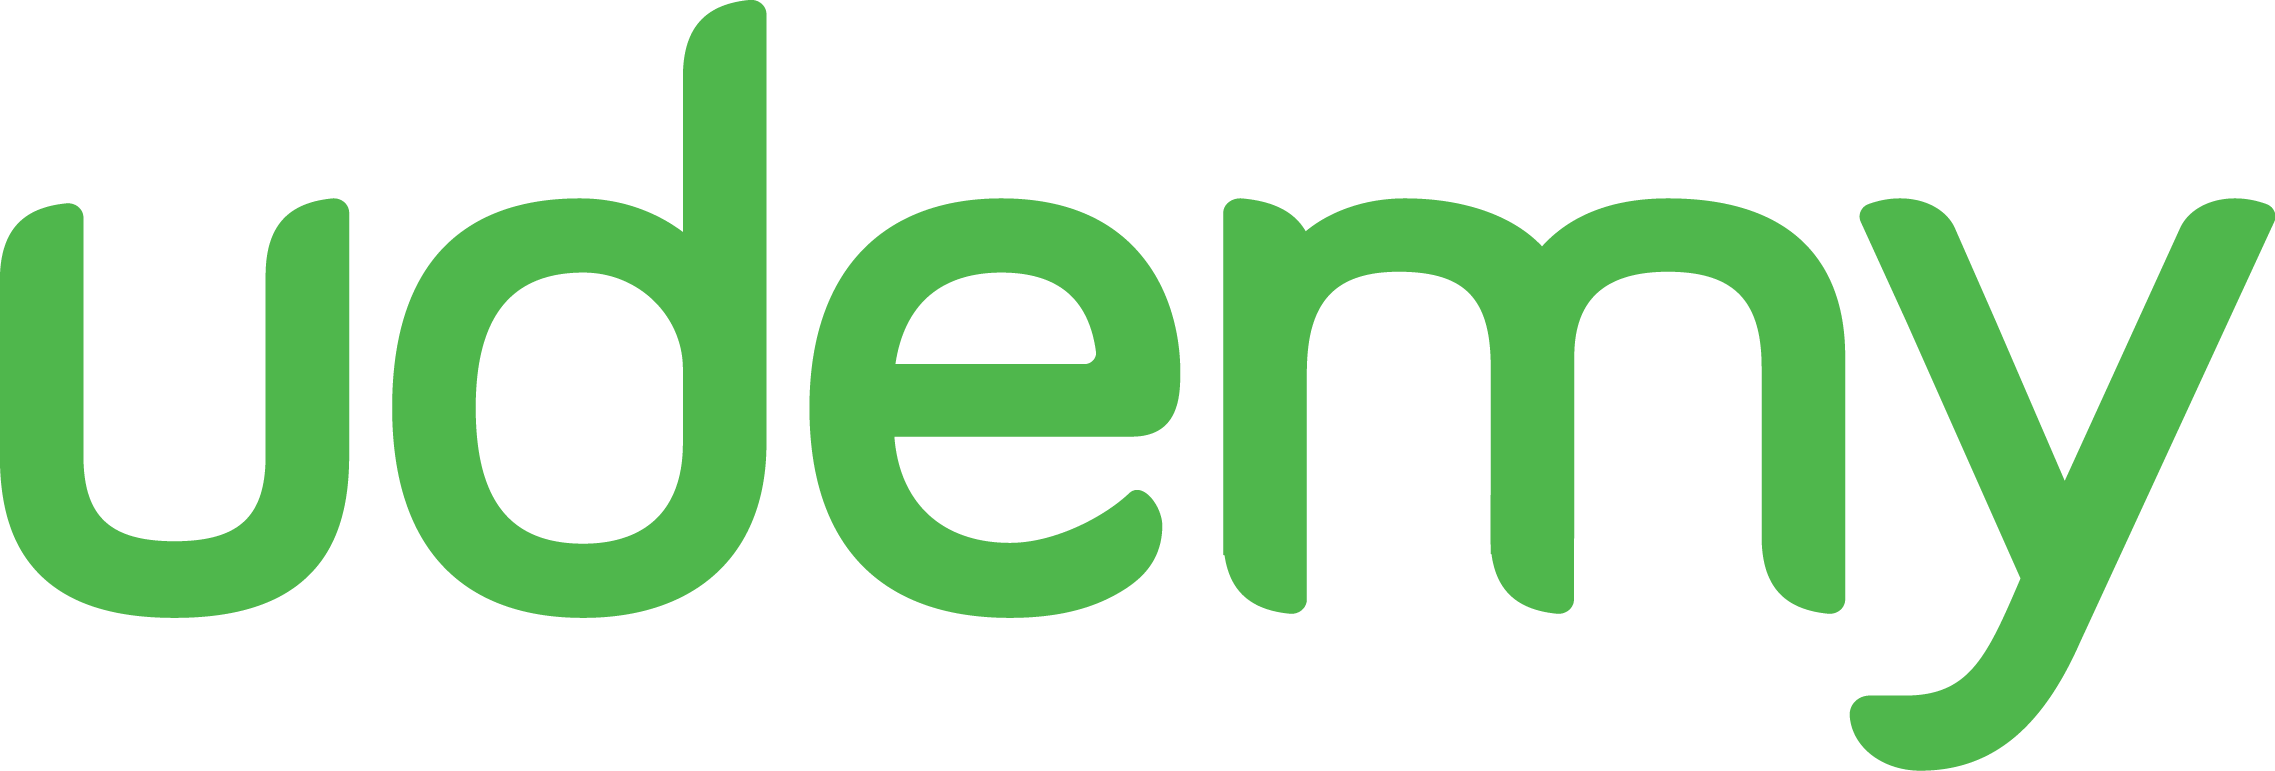 Udemy Logo photo - 1